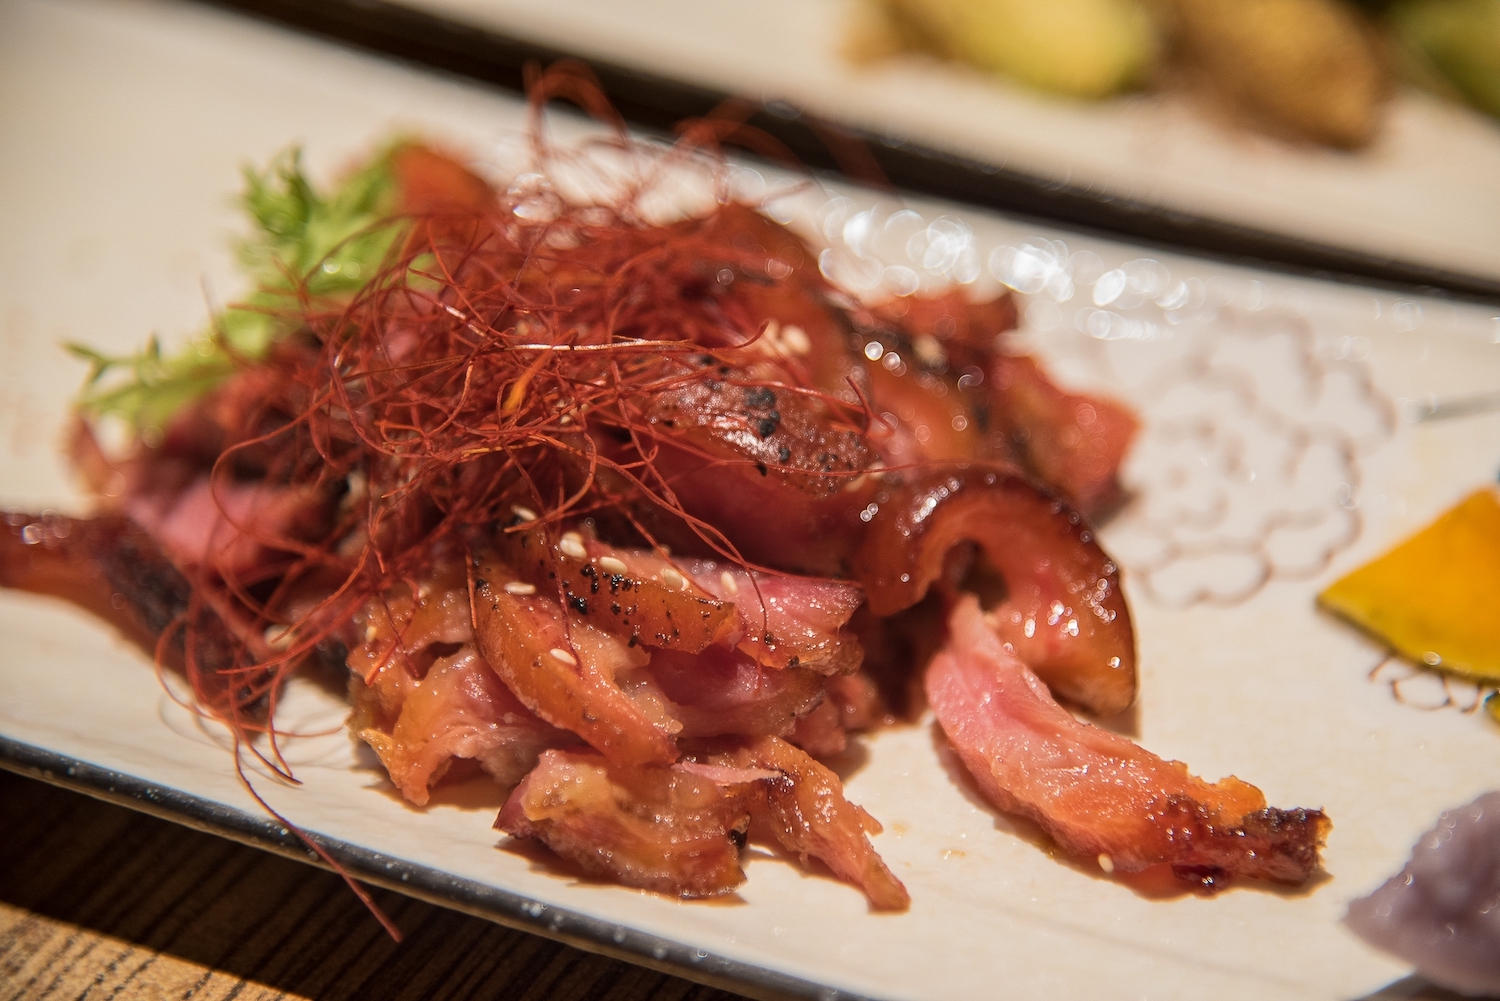 內湖日式料理美食推薦 幸和殿 大推生魚片刺身、清酒服務 